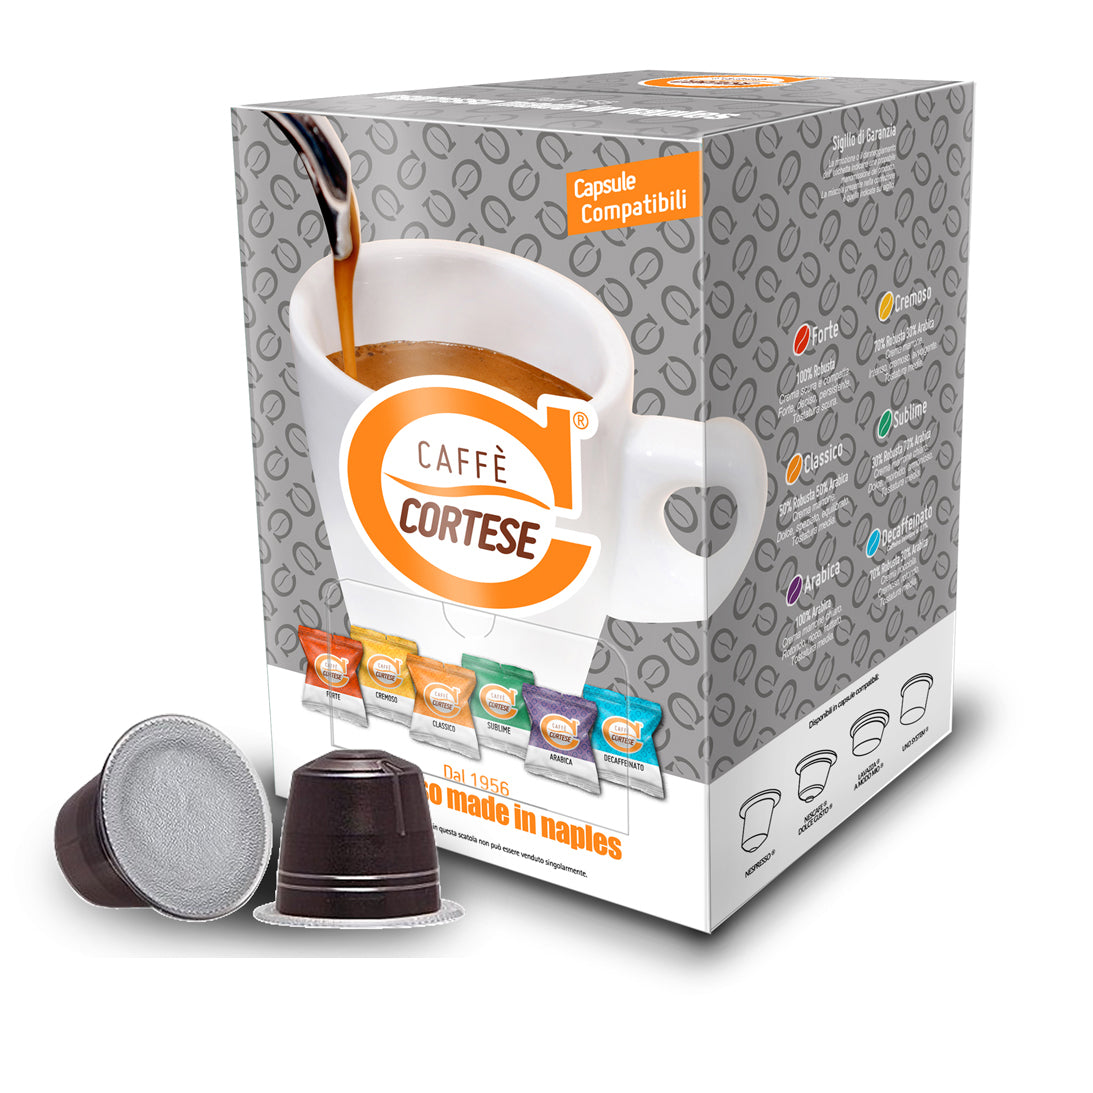 Capsule Caffè Cortese compatibili Nespresso - Kit Degustazione